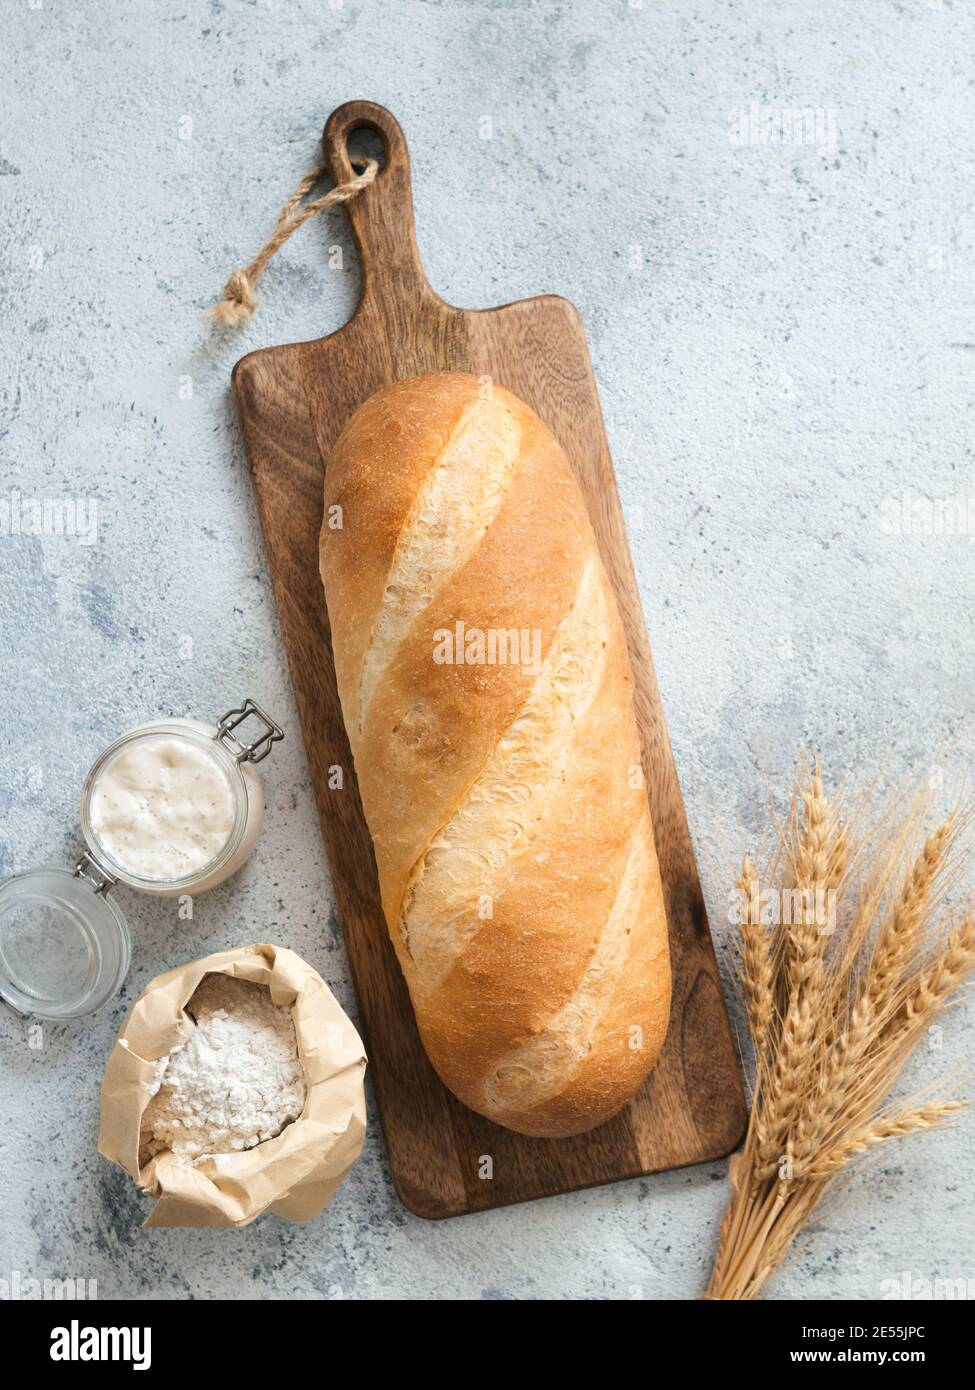 British White Bloomer oder europäischen Sauerteig Baton Laib Brot auf grauem Zement Hintergrund. Frisches Brot, Glas mit Sauerteig Starter, Mehl in Papiertüte und Ohren. Draufsicht. Speicherplatz kopieren. Vertikal Stockfoto